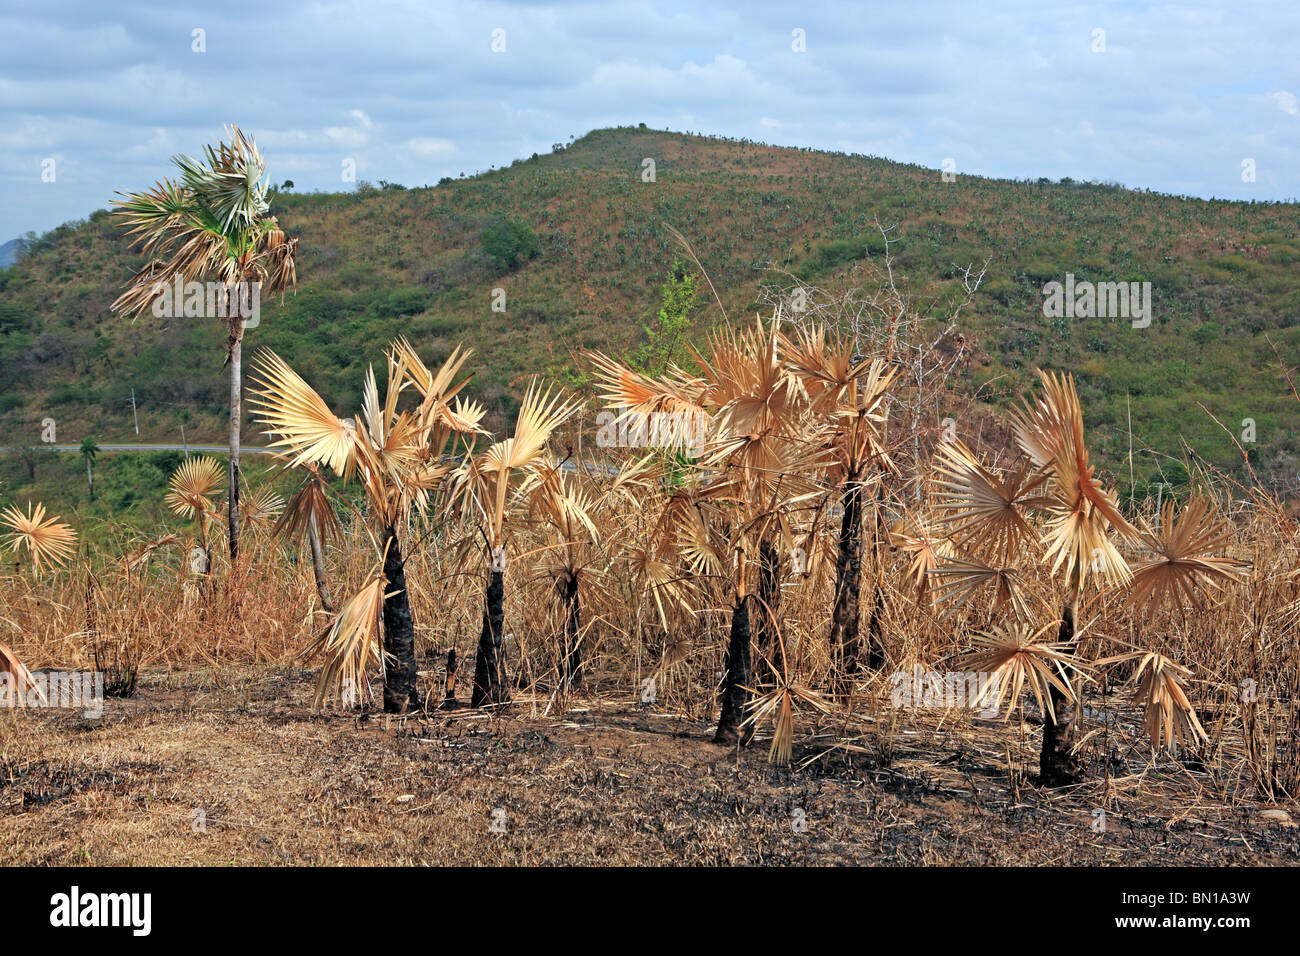 Valle de Los Ingenios (Zuckerfabriken Tal), Kuba Stockfoto